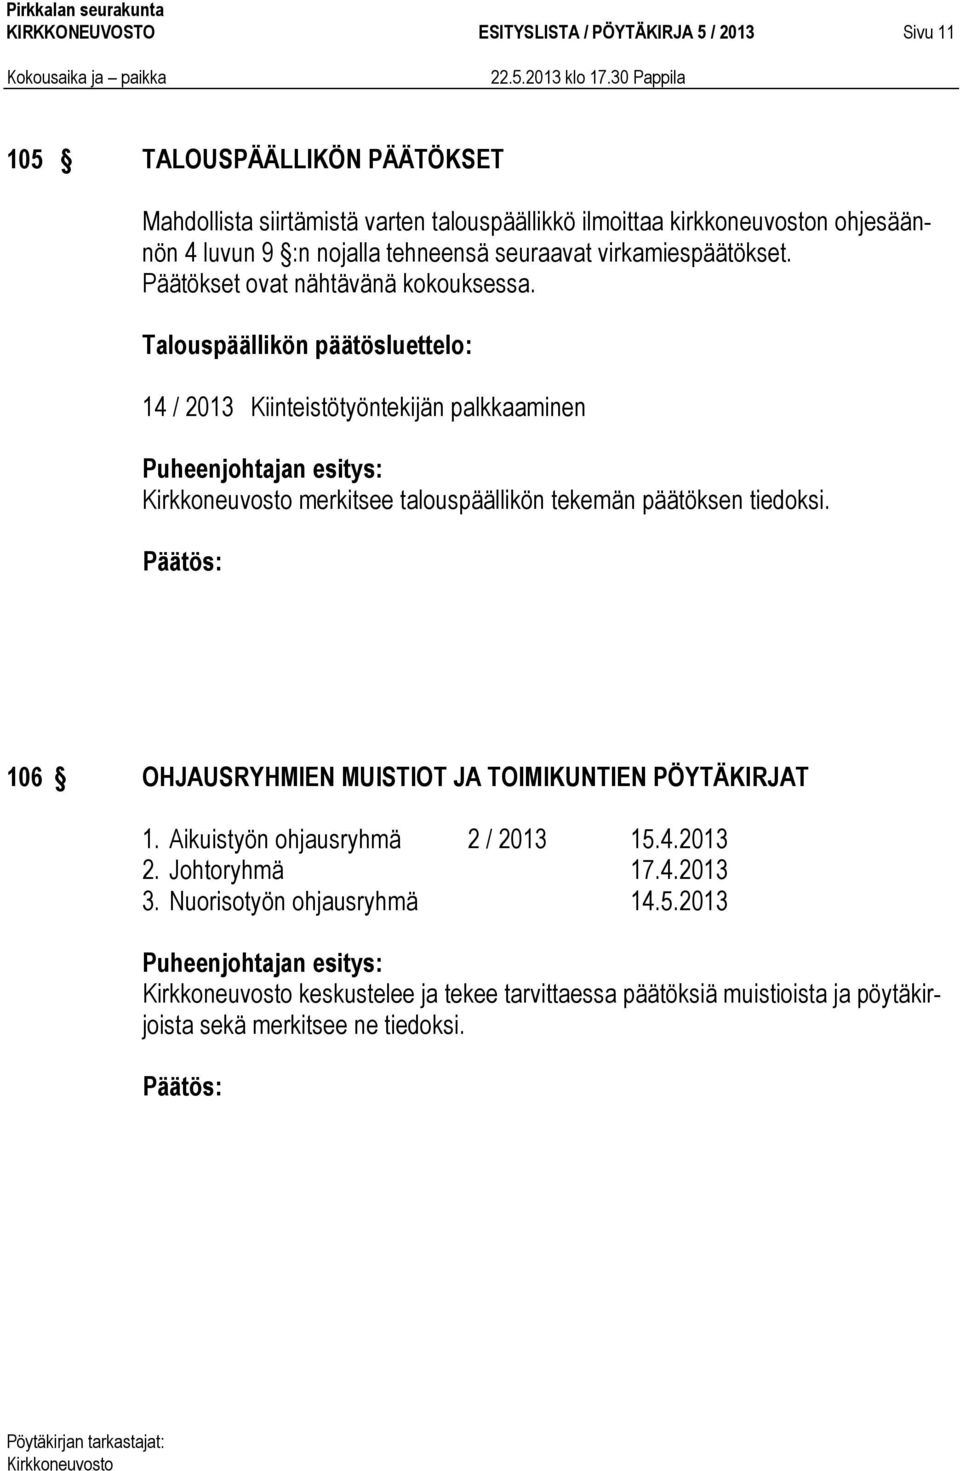 Talouspäällikön päätösluettelo: 14 / 2013 Kiinteistötyöntekijän palkkaaminen merkitsee talouspäällikön tekemän päätöksen tiedoksi.